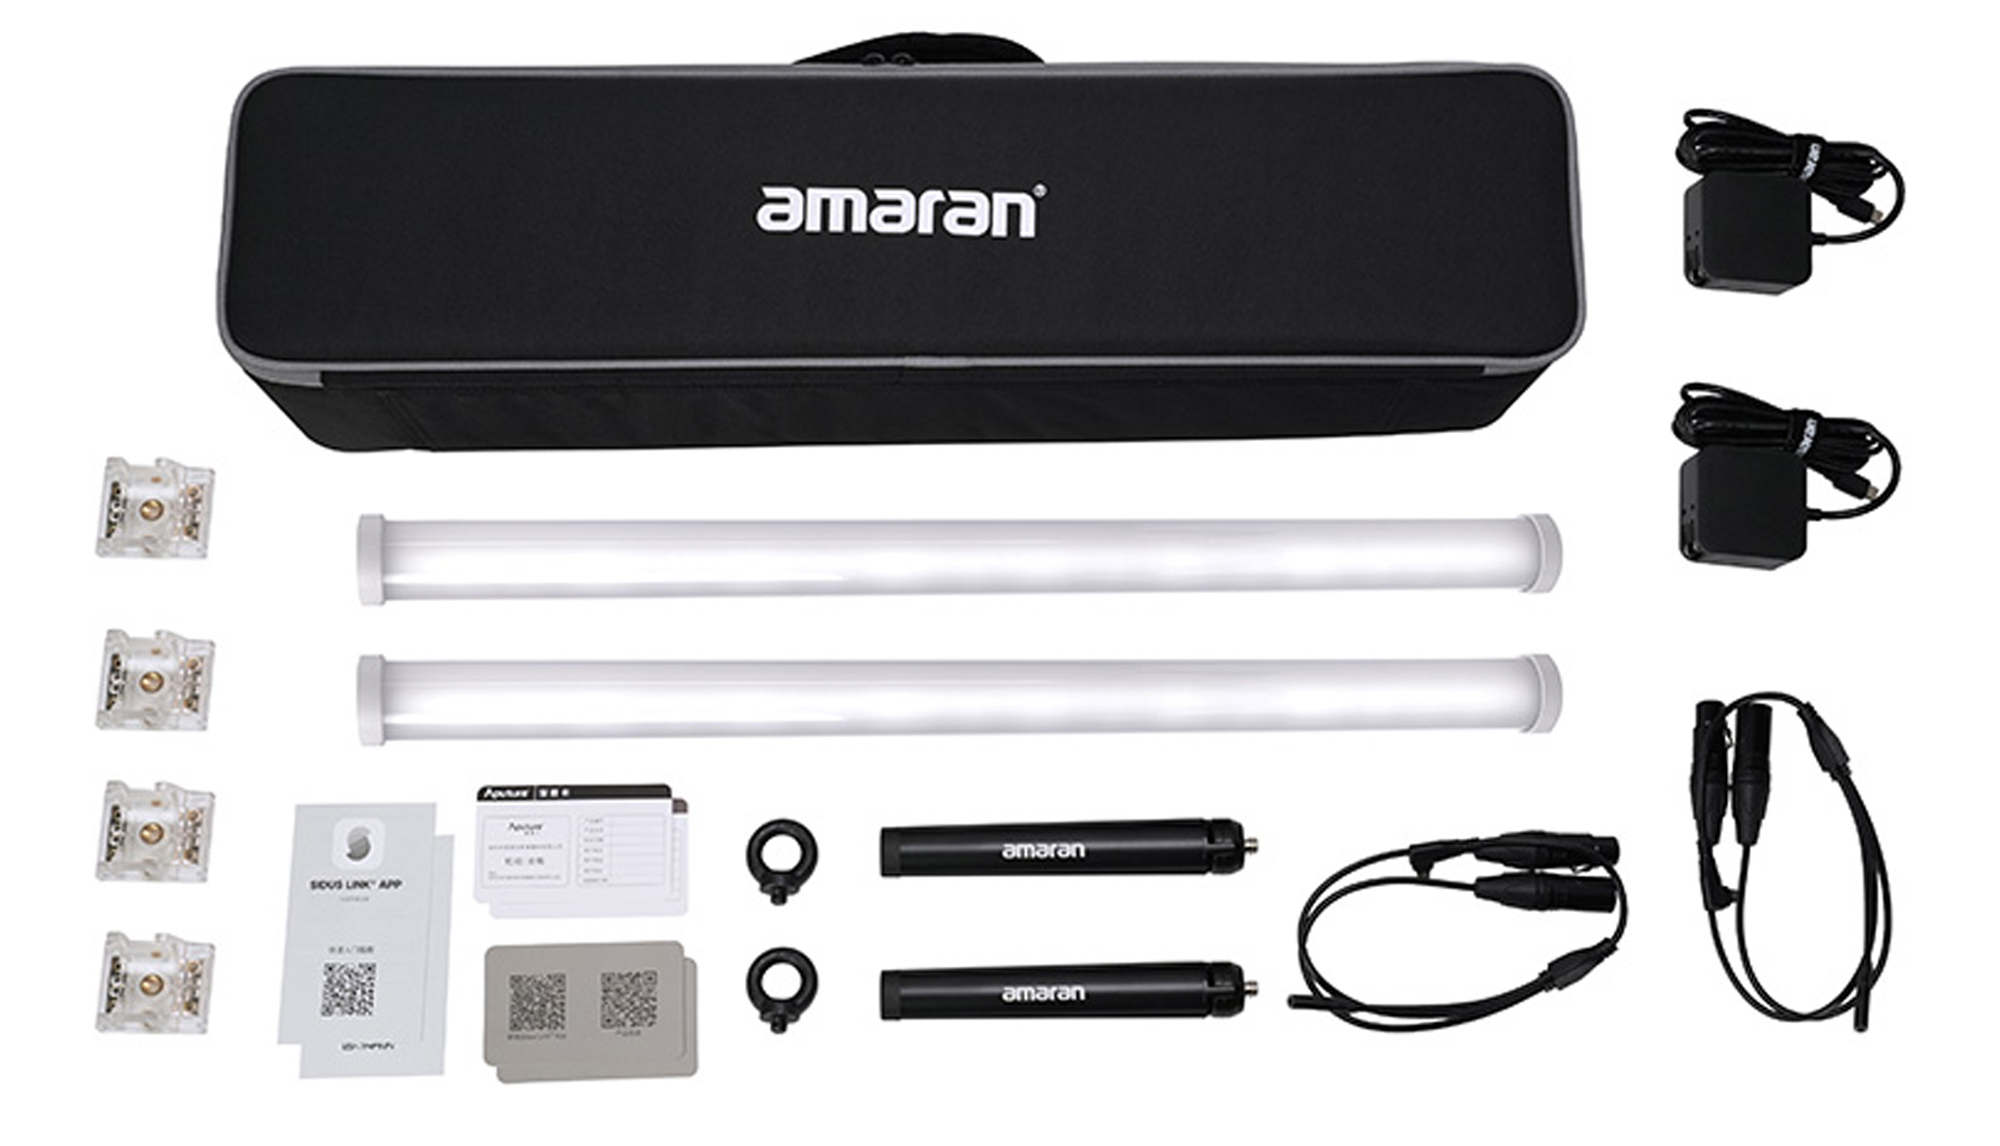 アガイ商事、Aputureのチューブ型LED照明 amaran PT シリーズを発売